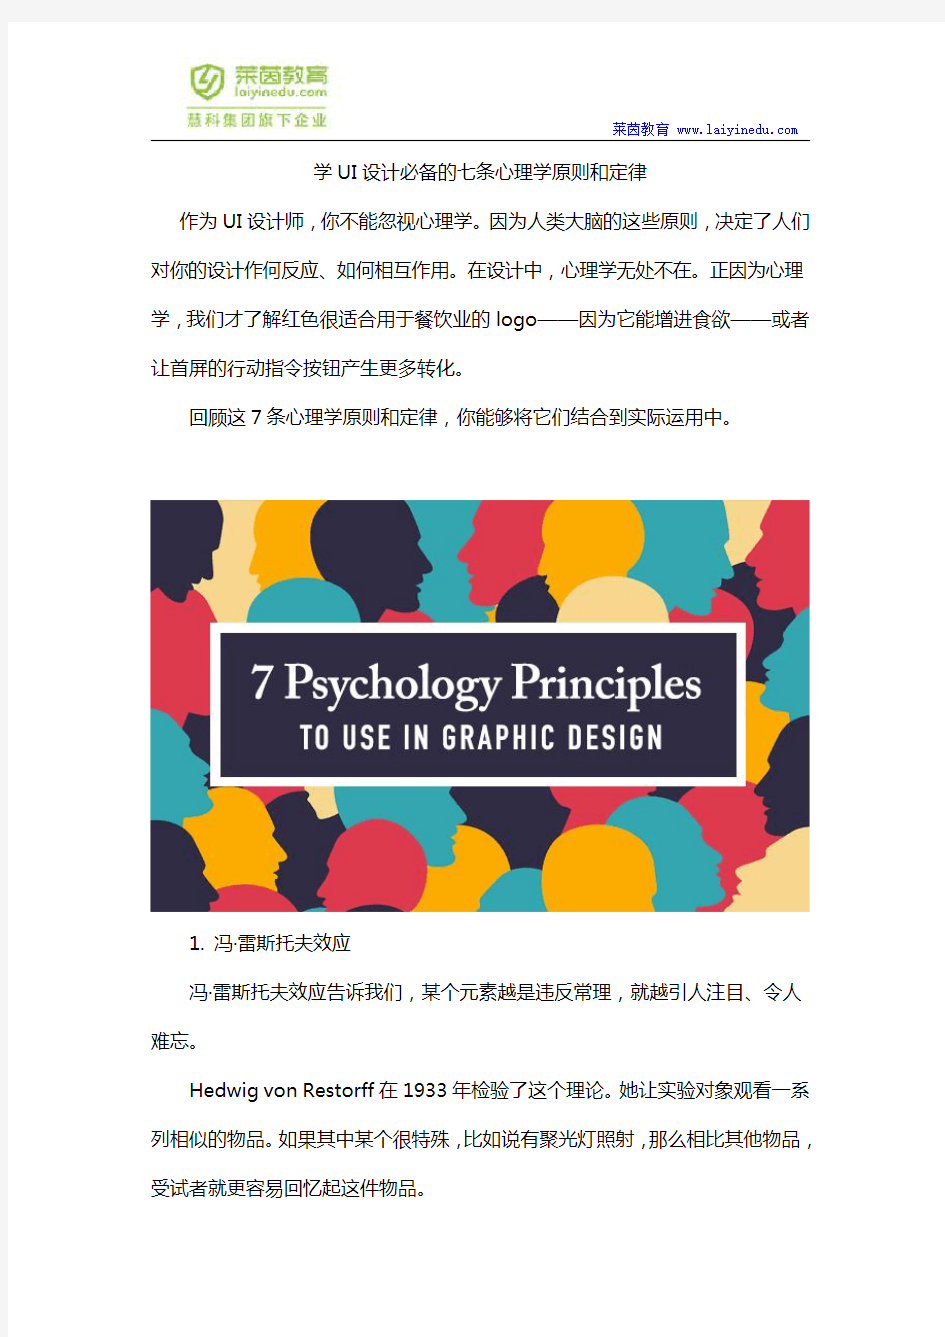 学UI设计必备的七条心理学原则和定律